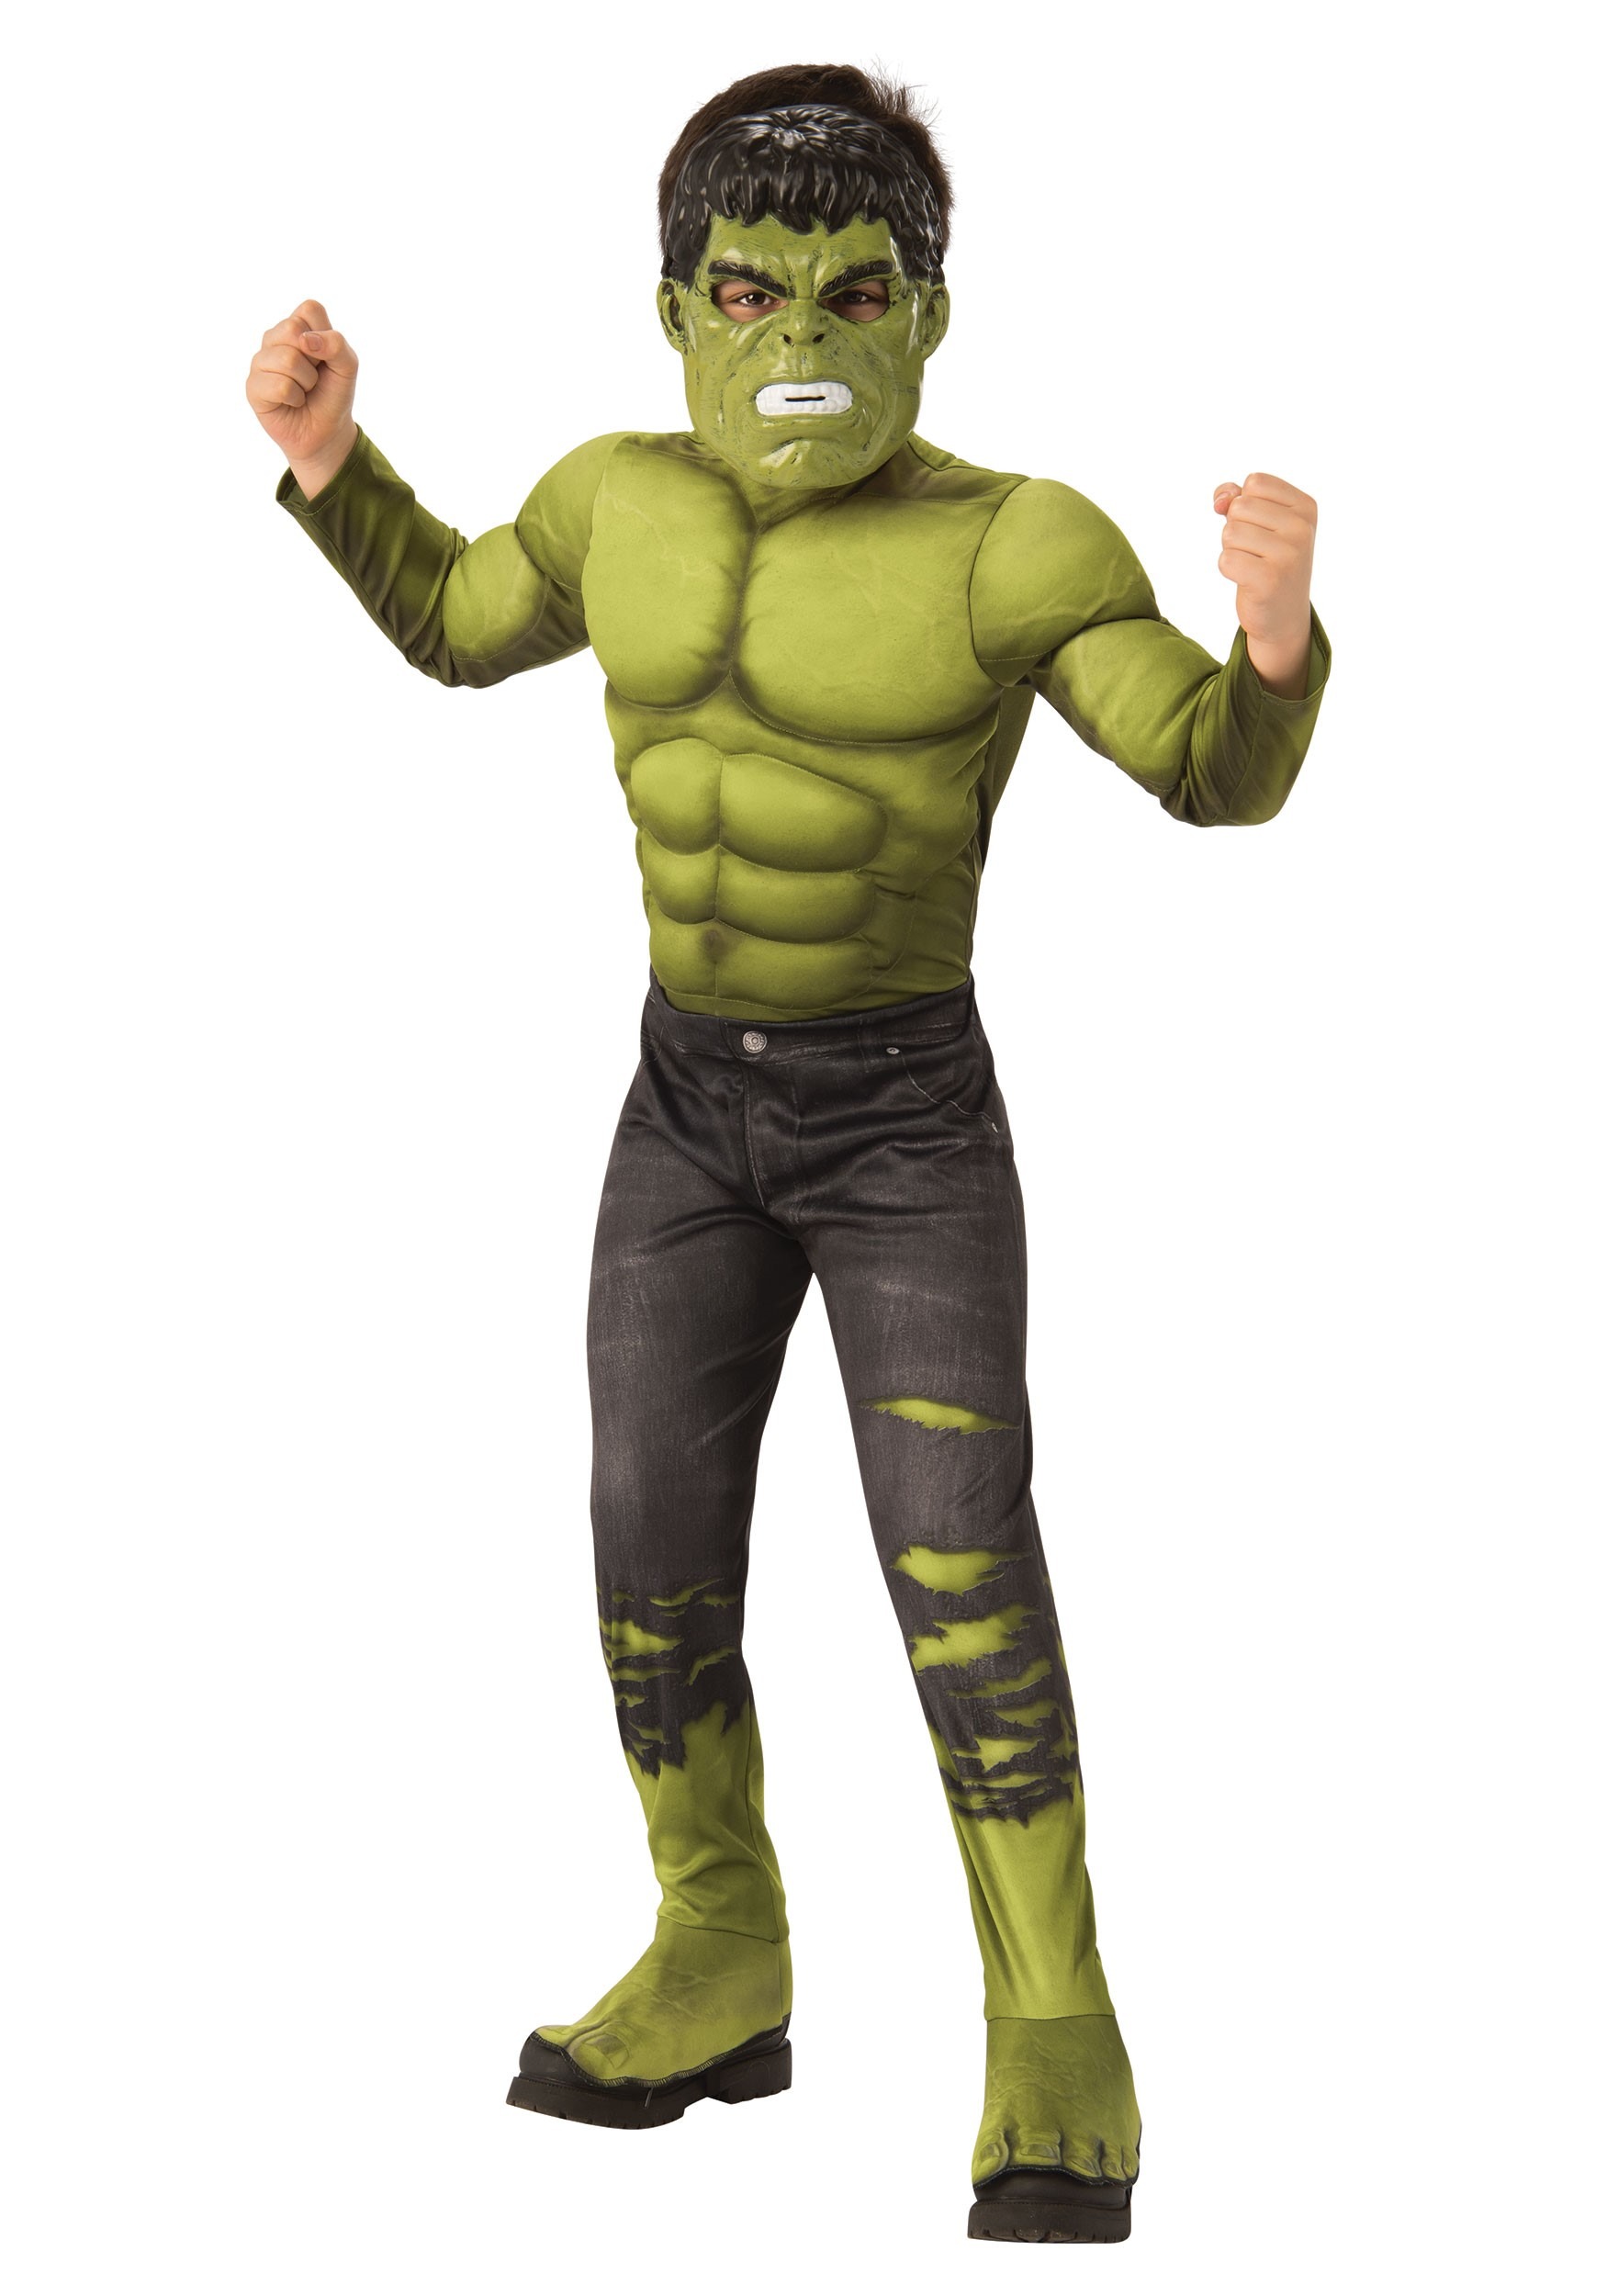 Kit déguisement Avengers - Hulk - 3-6 ans - Jour de Fête - Garçon -  Déguisement